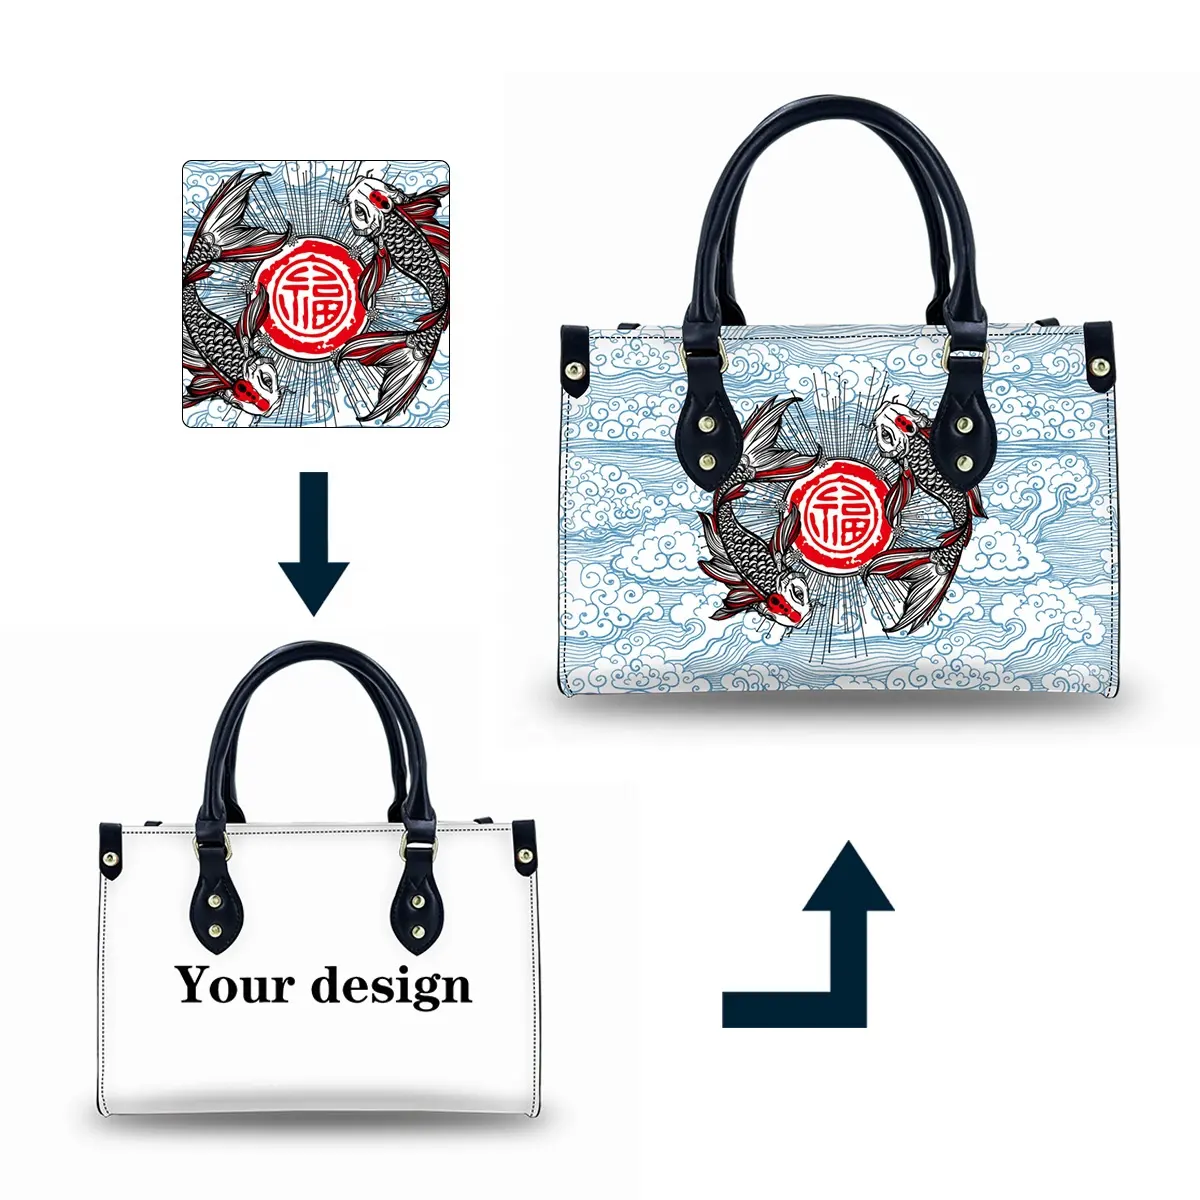 デザイナーNoMoqデザイン独自のレザーハンドバッグカスタムショッピングトートバッグ女性用高級デザイナーハンドバッグ